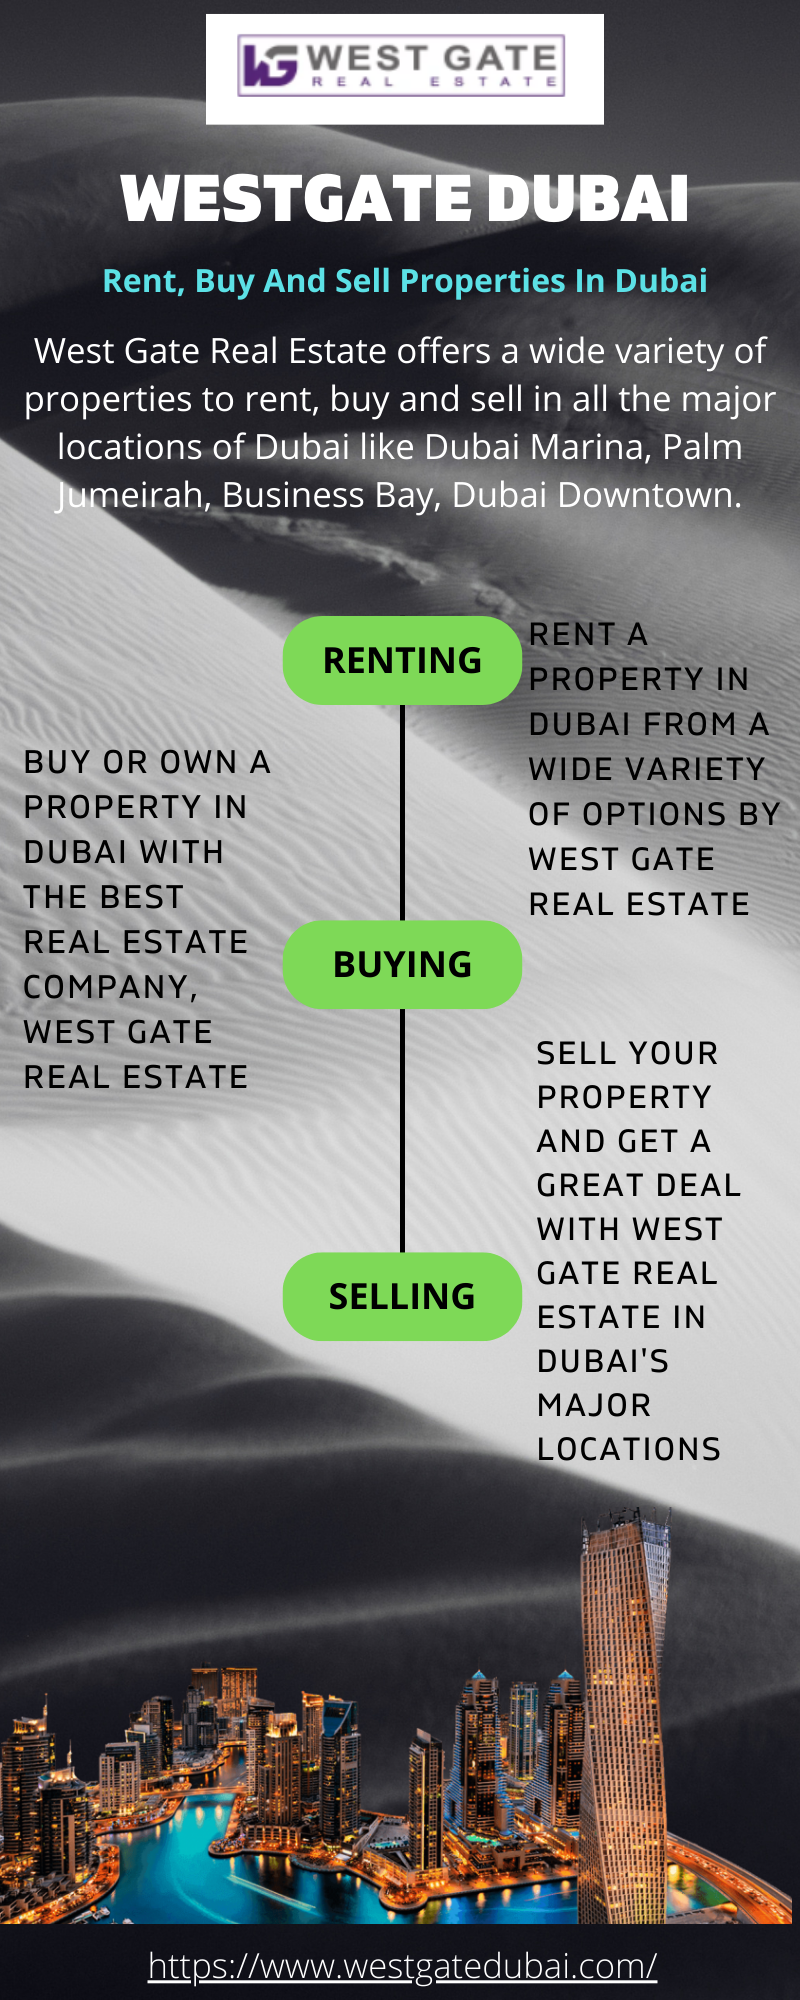 Luxury Real Estate Company in Dubai